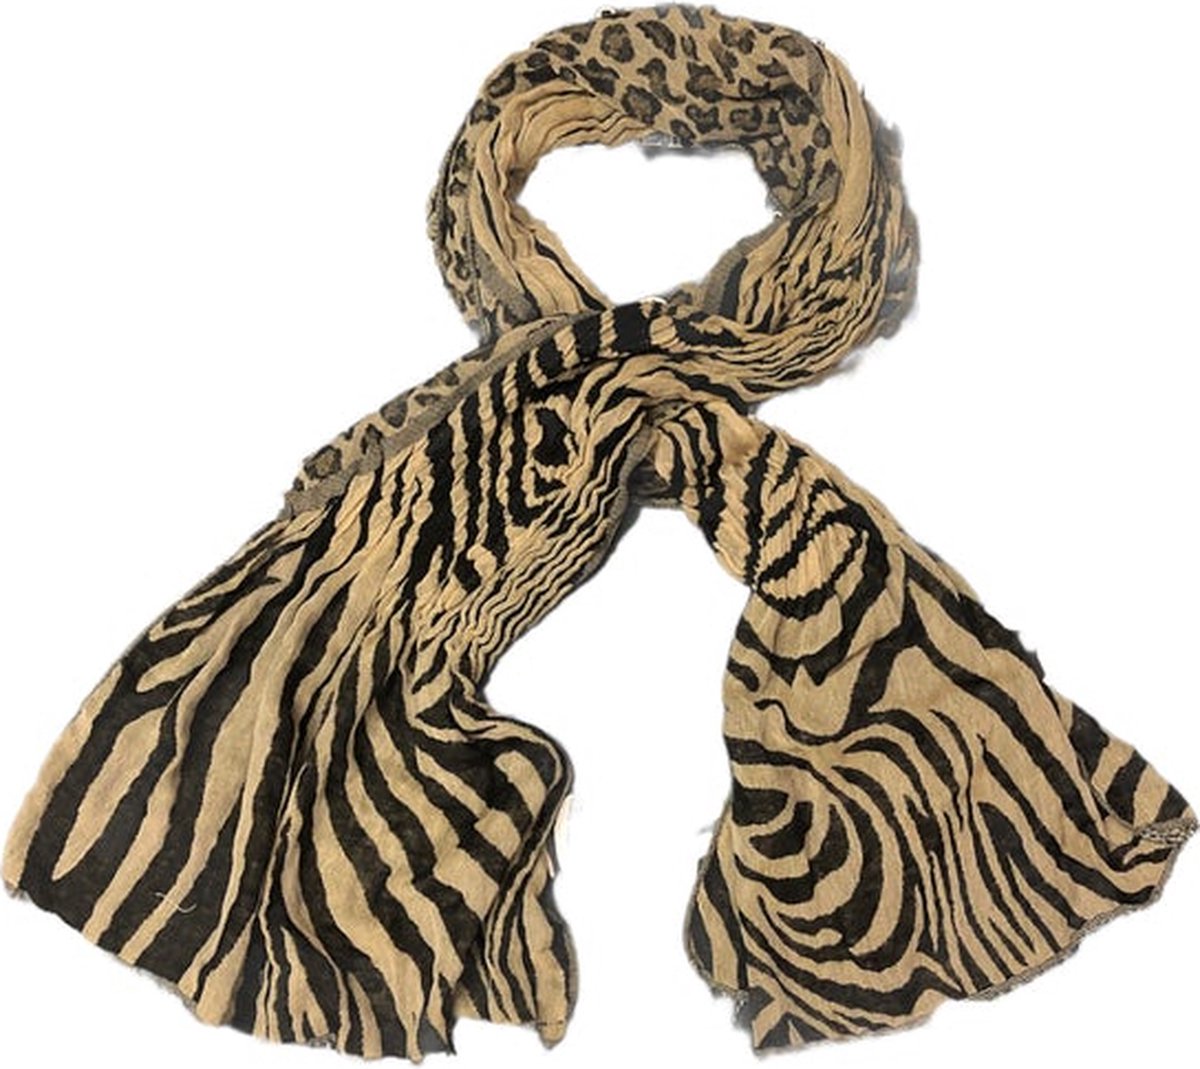 VanPalmen dunne sjaal - panterprint luipaard - topkwaliteit - Italiaans maatwerk